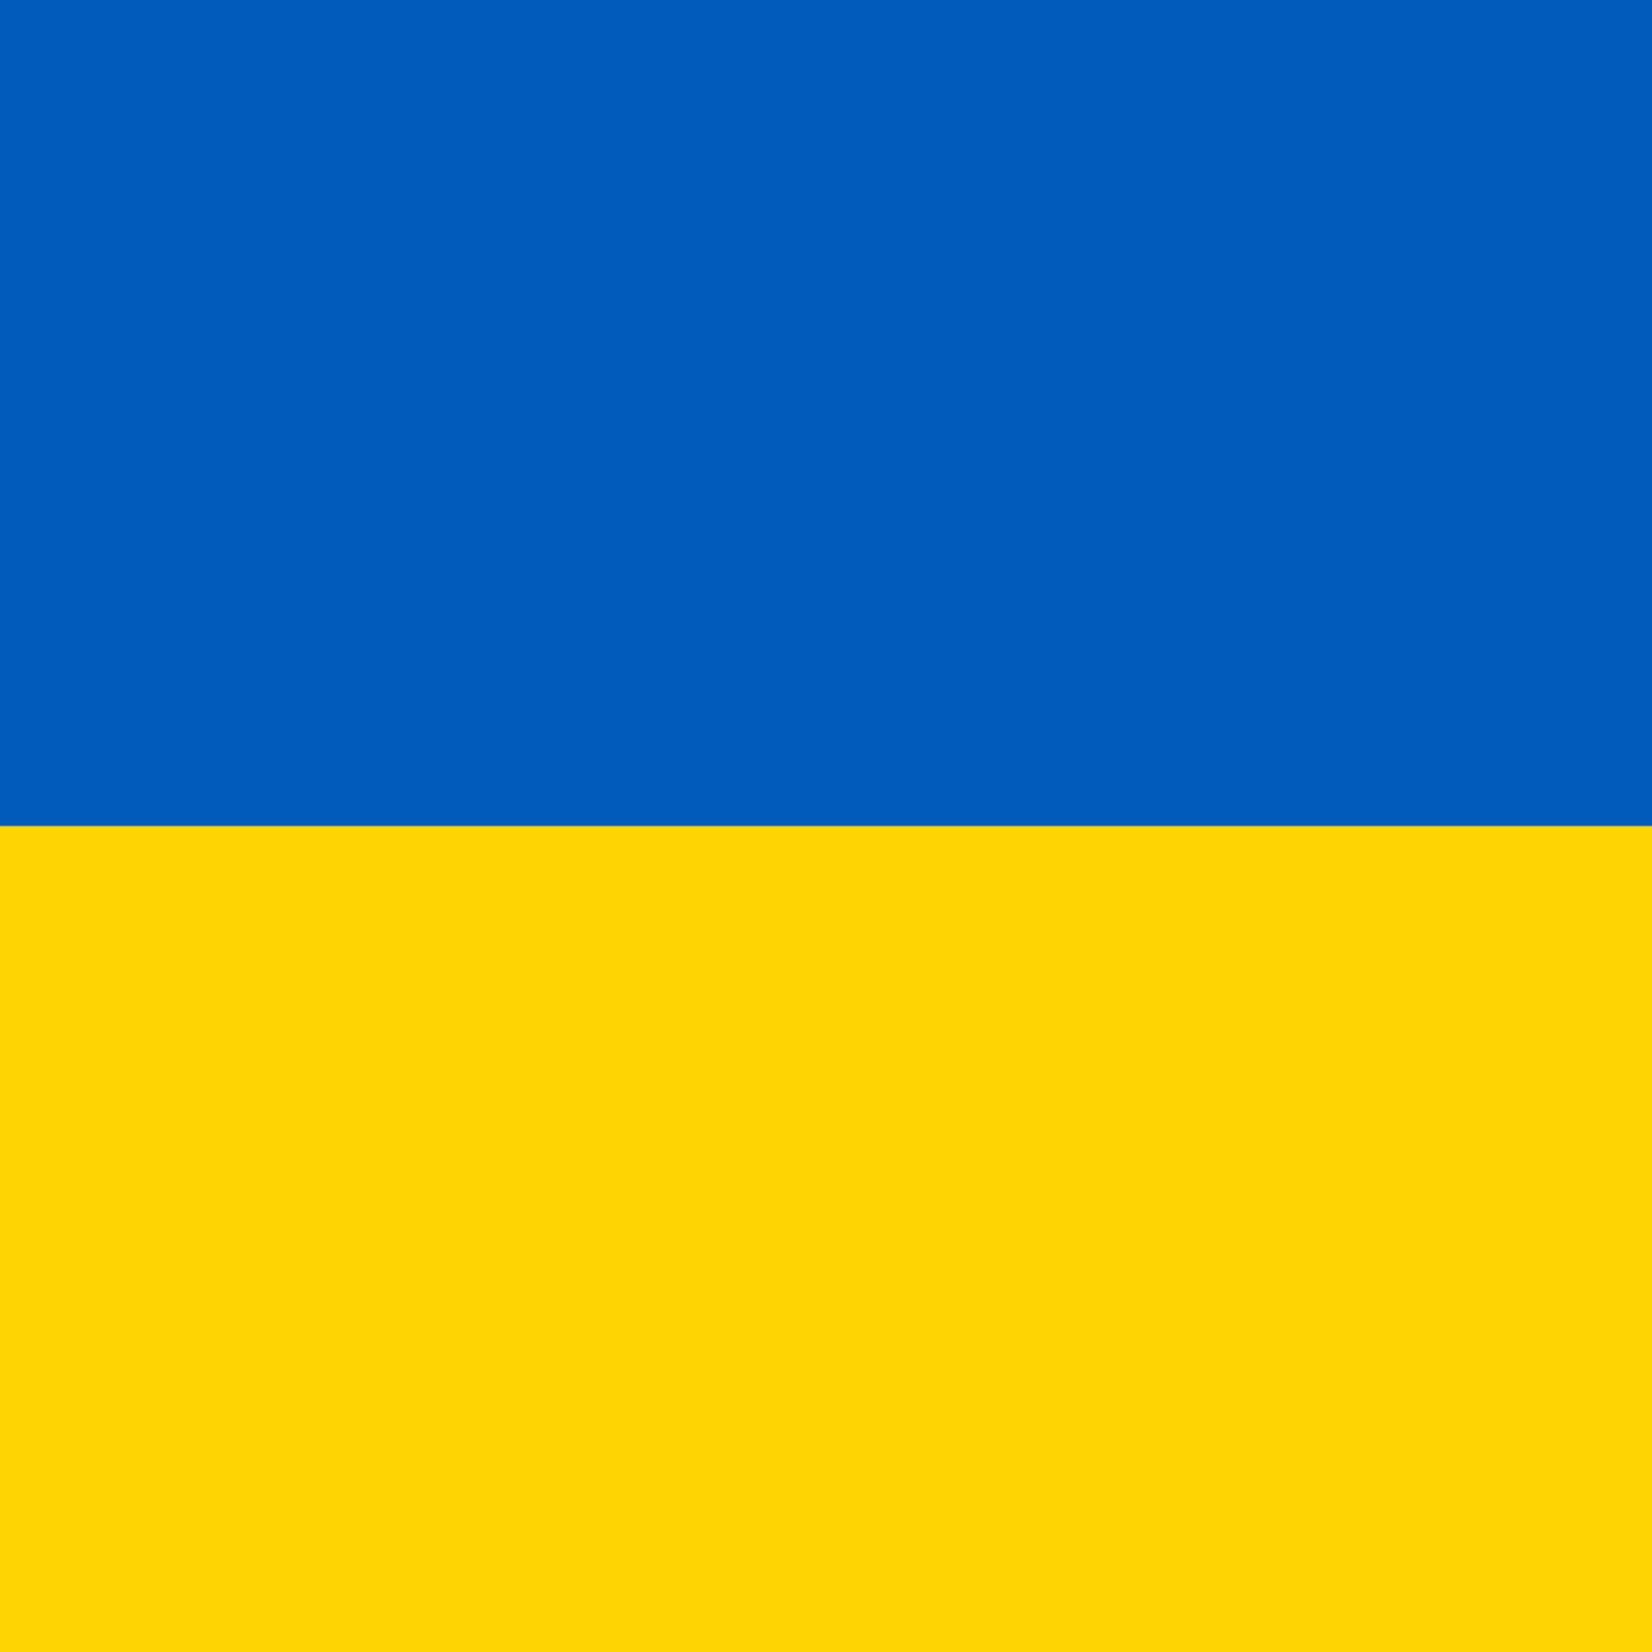 Donation to Ukraine - $25